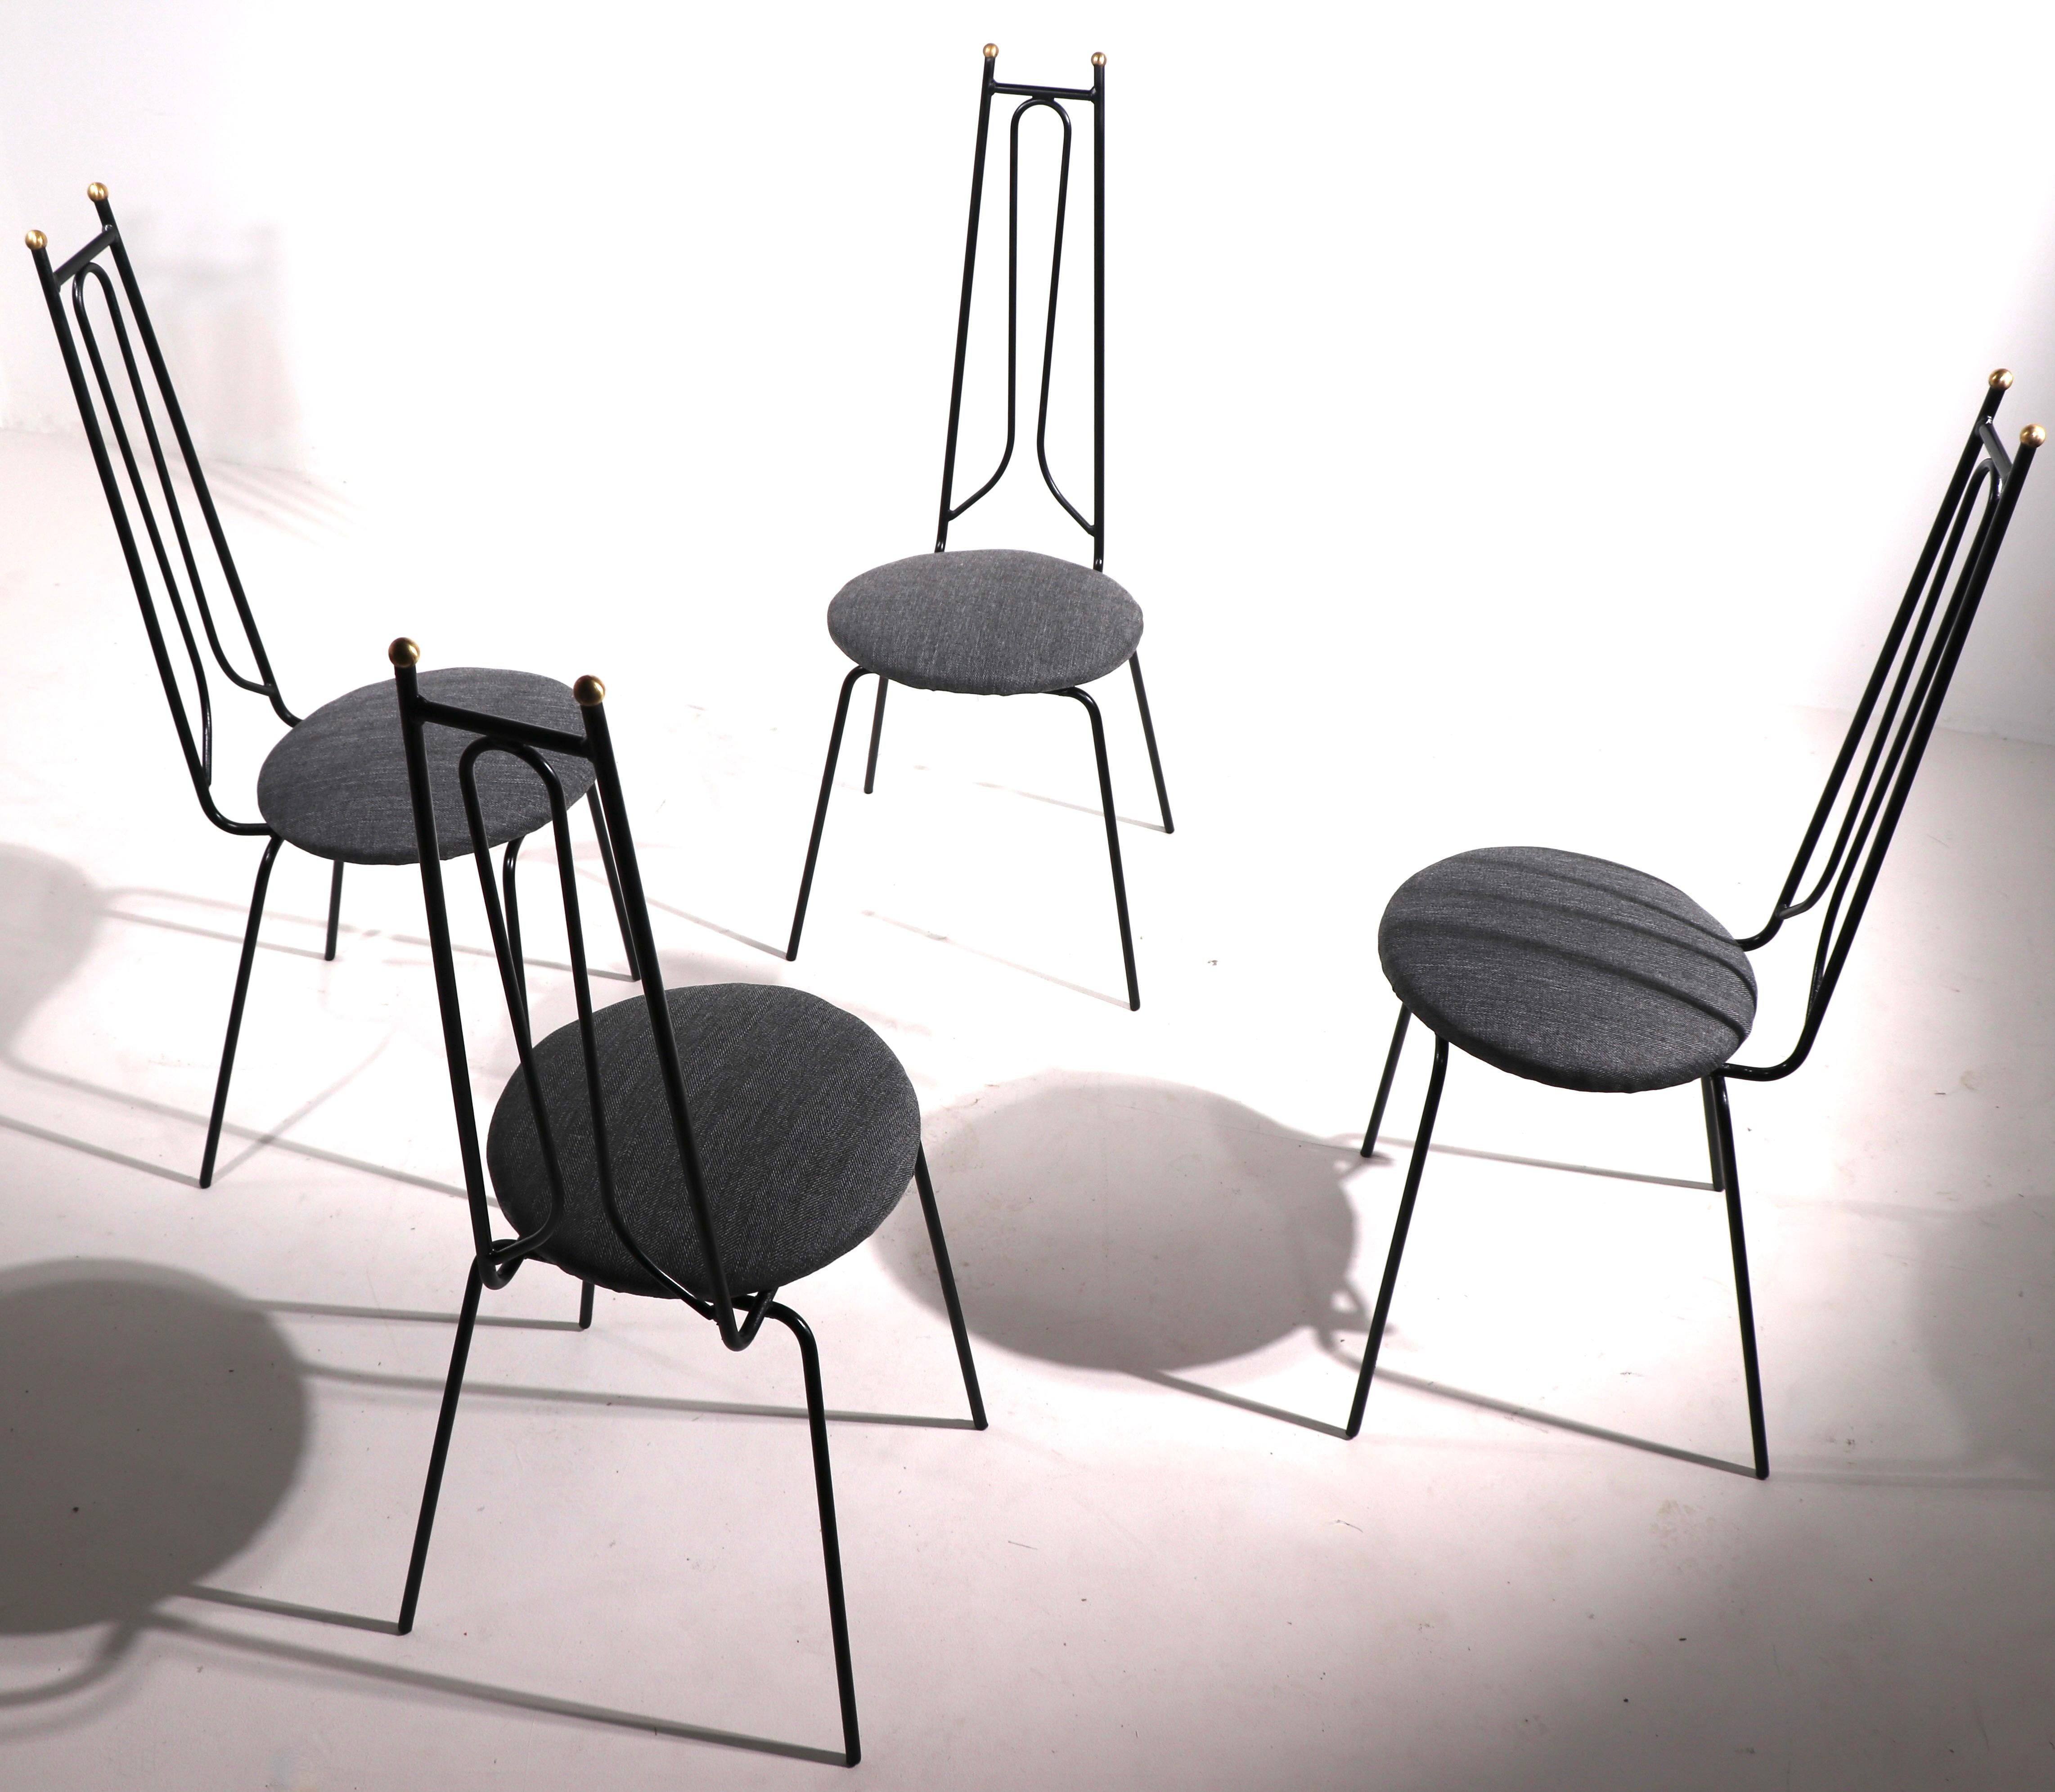 Ensemble de 4 chaises de café, de salle à manger, design attribué à Arthur Umanoff. Les cadres sont constitués de structures en tiges soudées, d'embouts à boule en laiton et de sièges rembourrés. Les chaises sont propres et prêtes à l'emploi. Elles